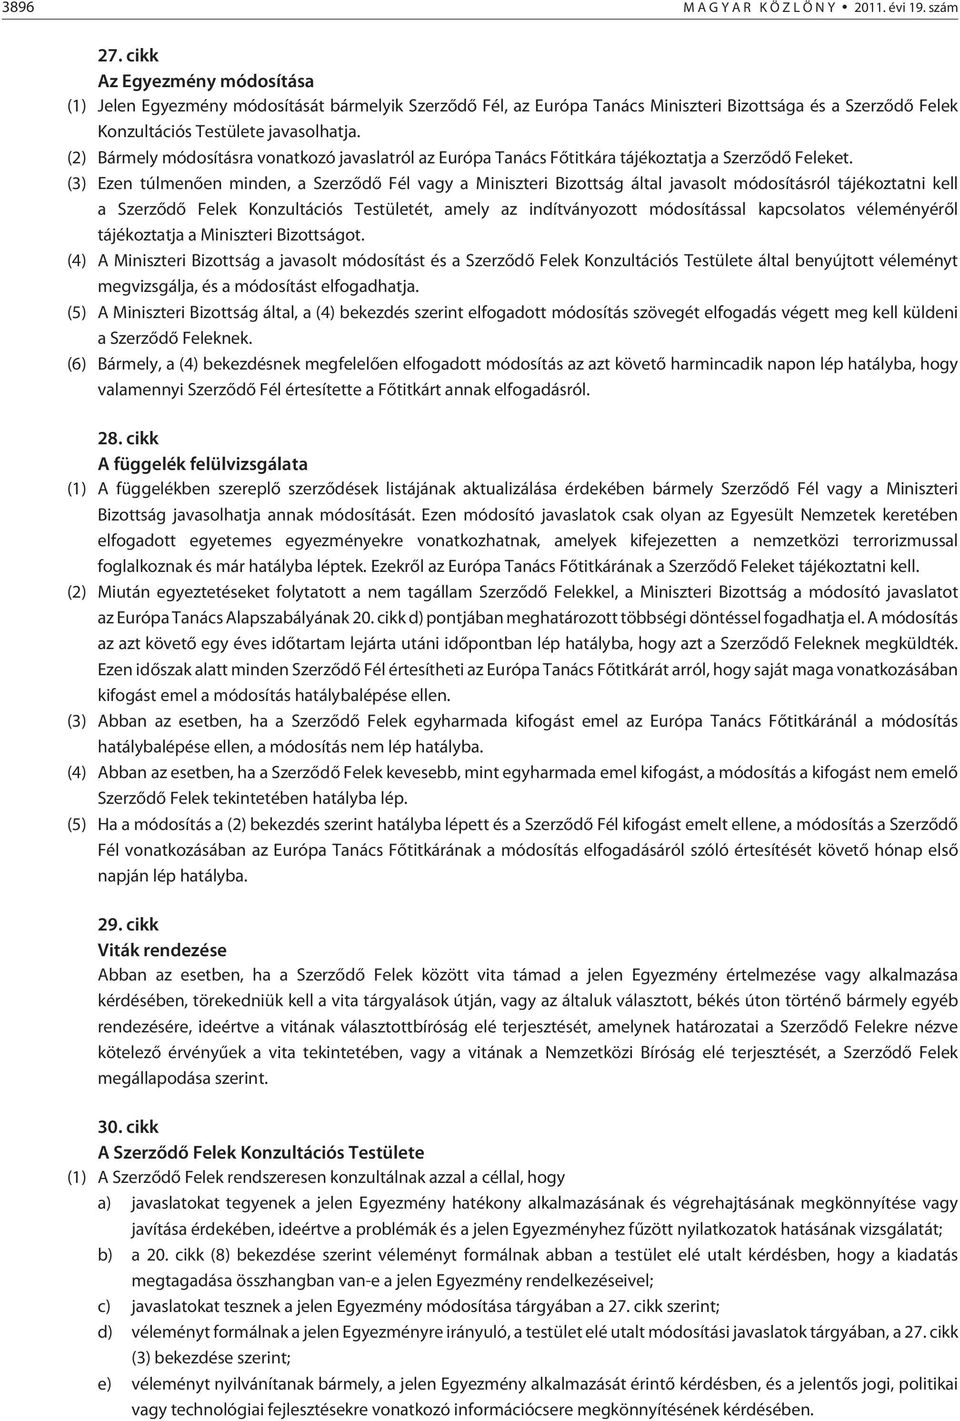 (2) Bármely módosításra vonatkozó javaslatról az Európa Tanács Fõtitkára tájékoztatja a Szerzõdõ Feleket.